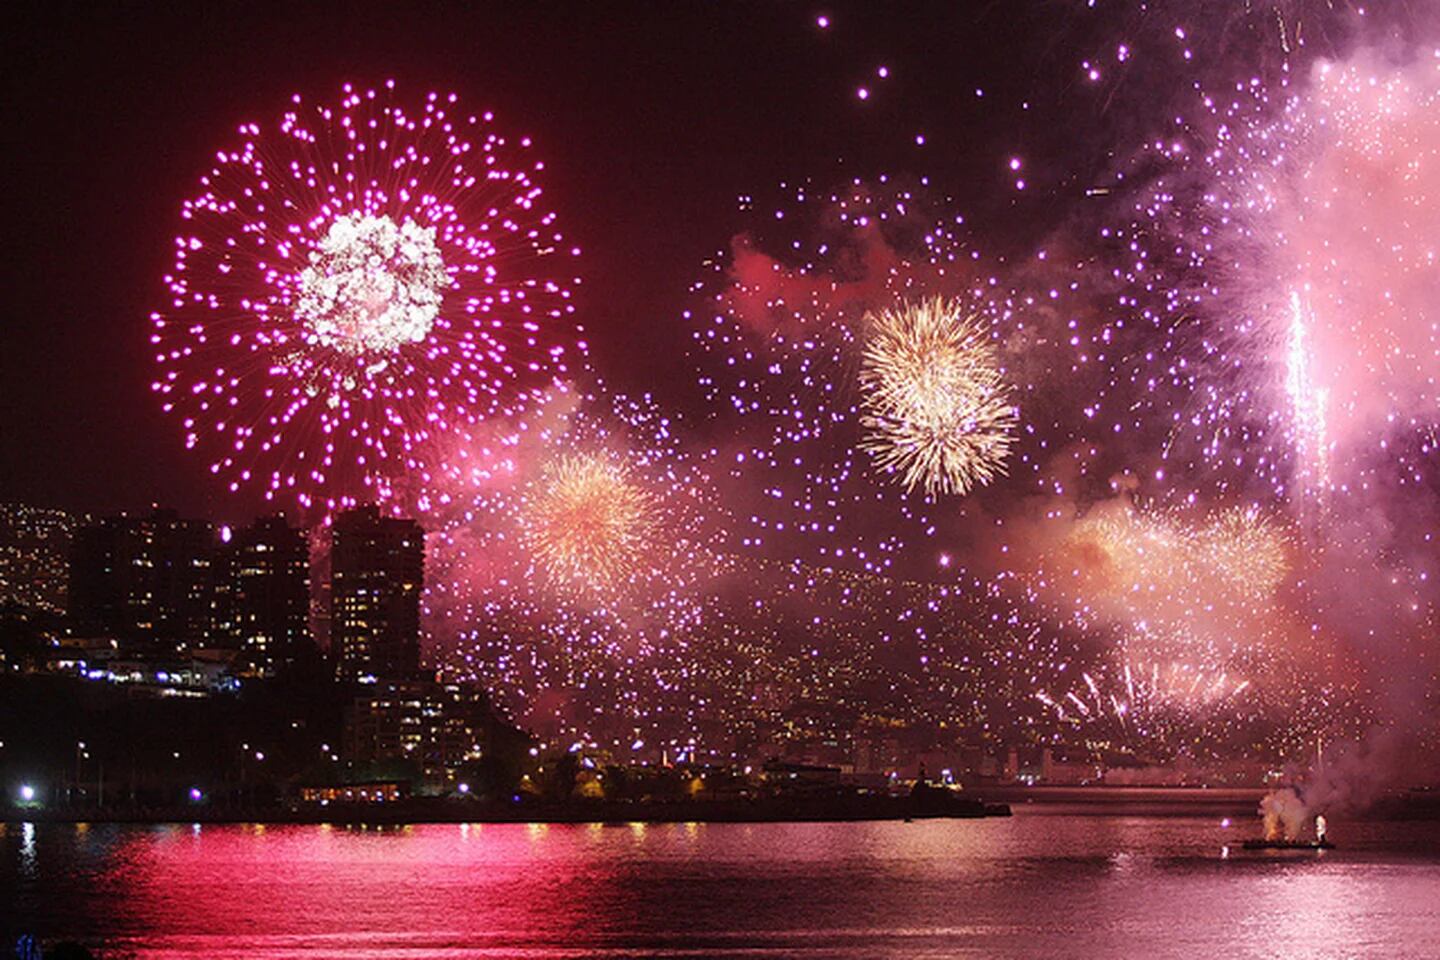 Ciudades con fuegos artificiales para el Año Nuevo 2024 - La Tercera